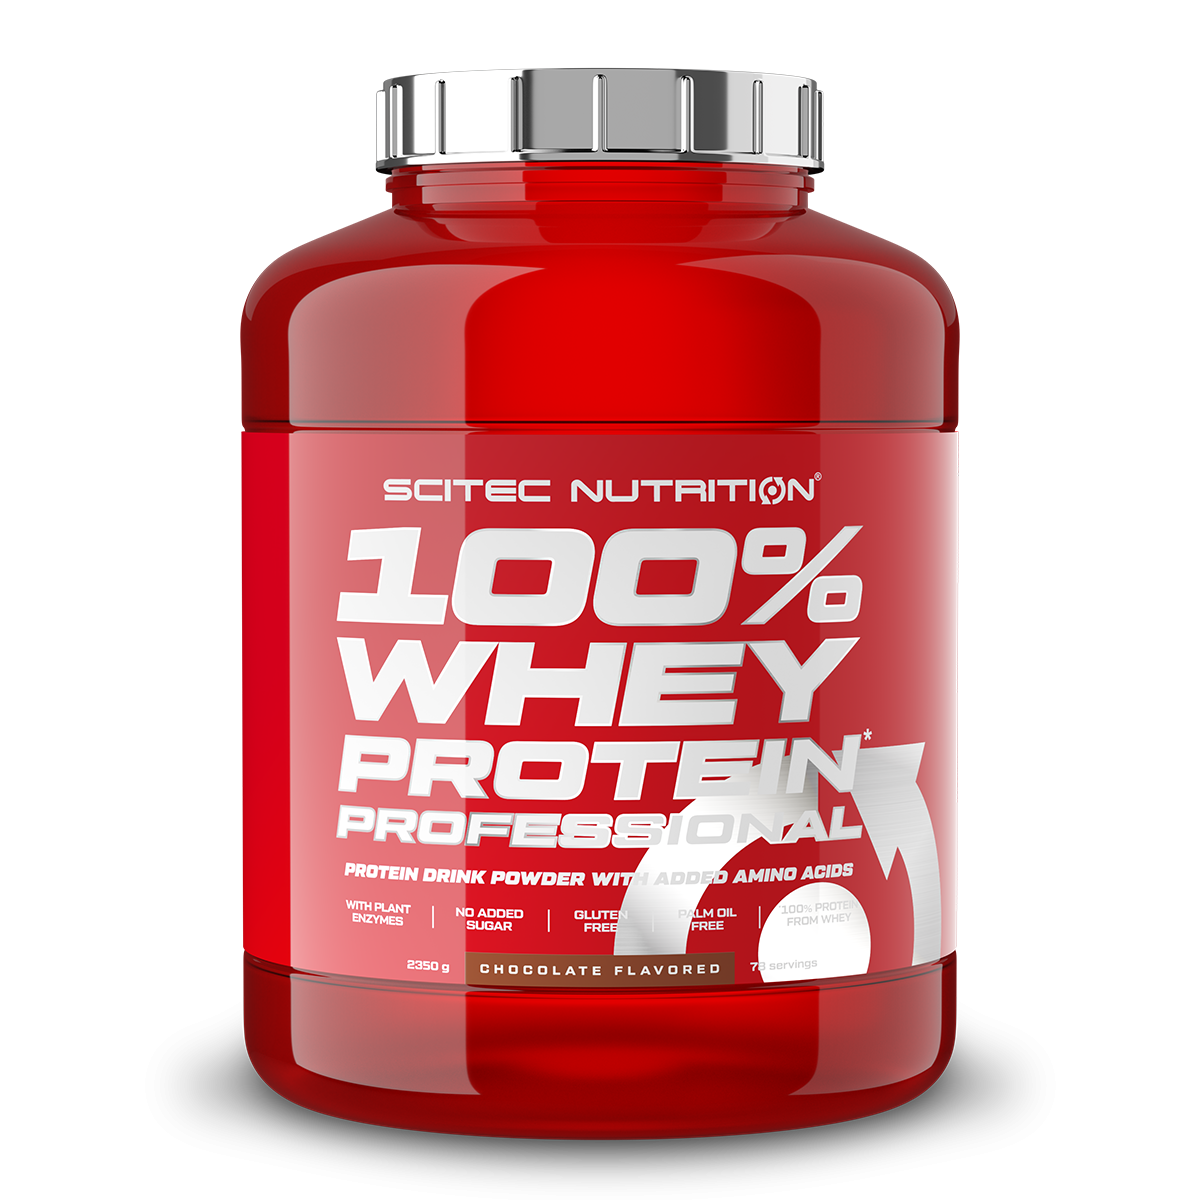 Scitec Nutrition 100% Whey Protein Professional mit extra zusätzlichen Aminosäuren und Verdauungsenzymen, glutenfrei, 2.35 kg, Pistazie-Weiße Schokolade